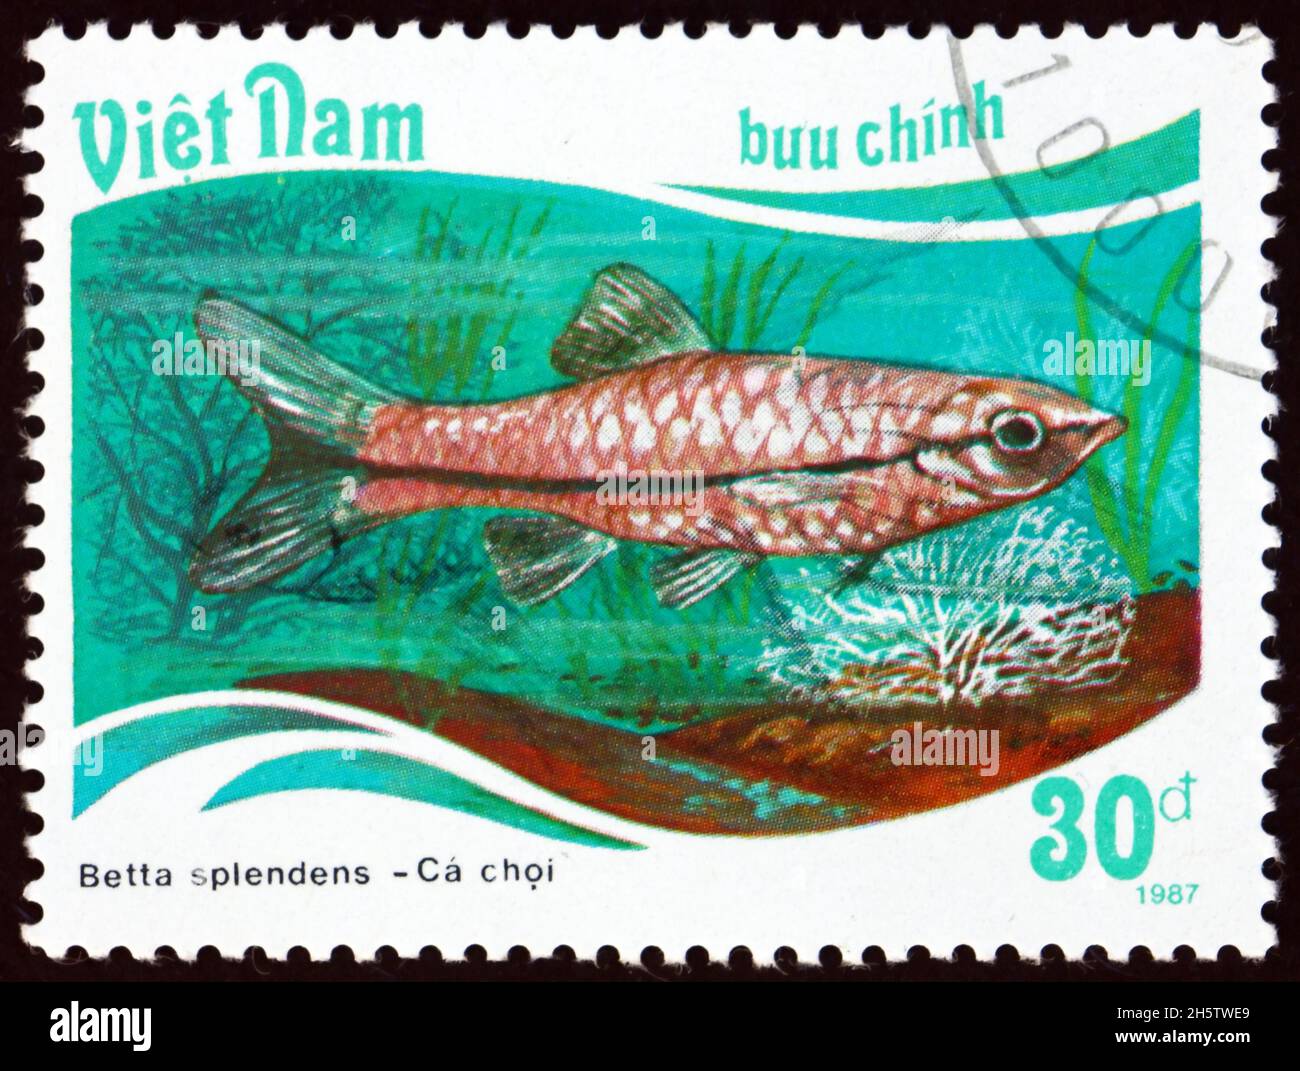 VIETNAM - UM 1988: Eine in Vietnam gedruckte Marke zeigt siamesische Kampffische, Betta splendens, eine Art tropischer Süßwasserfische, um 1988 Stockfoto